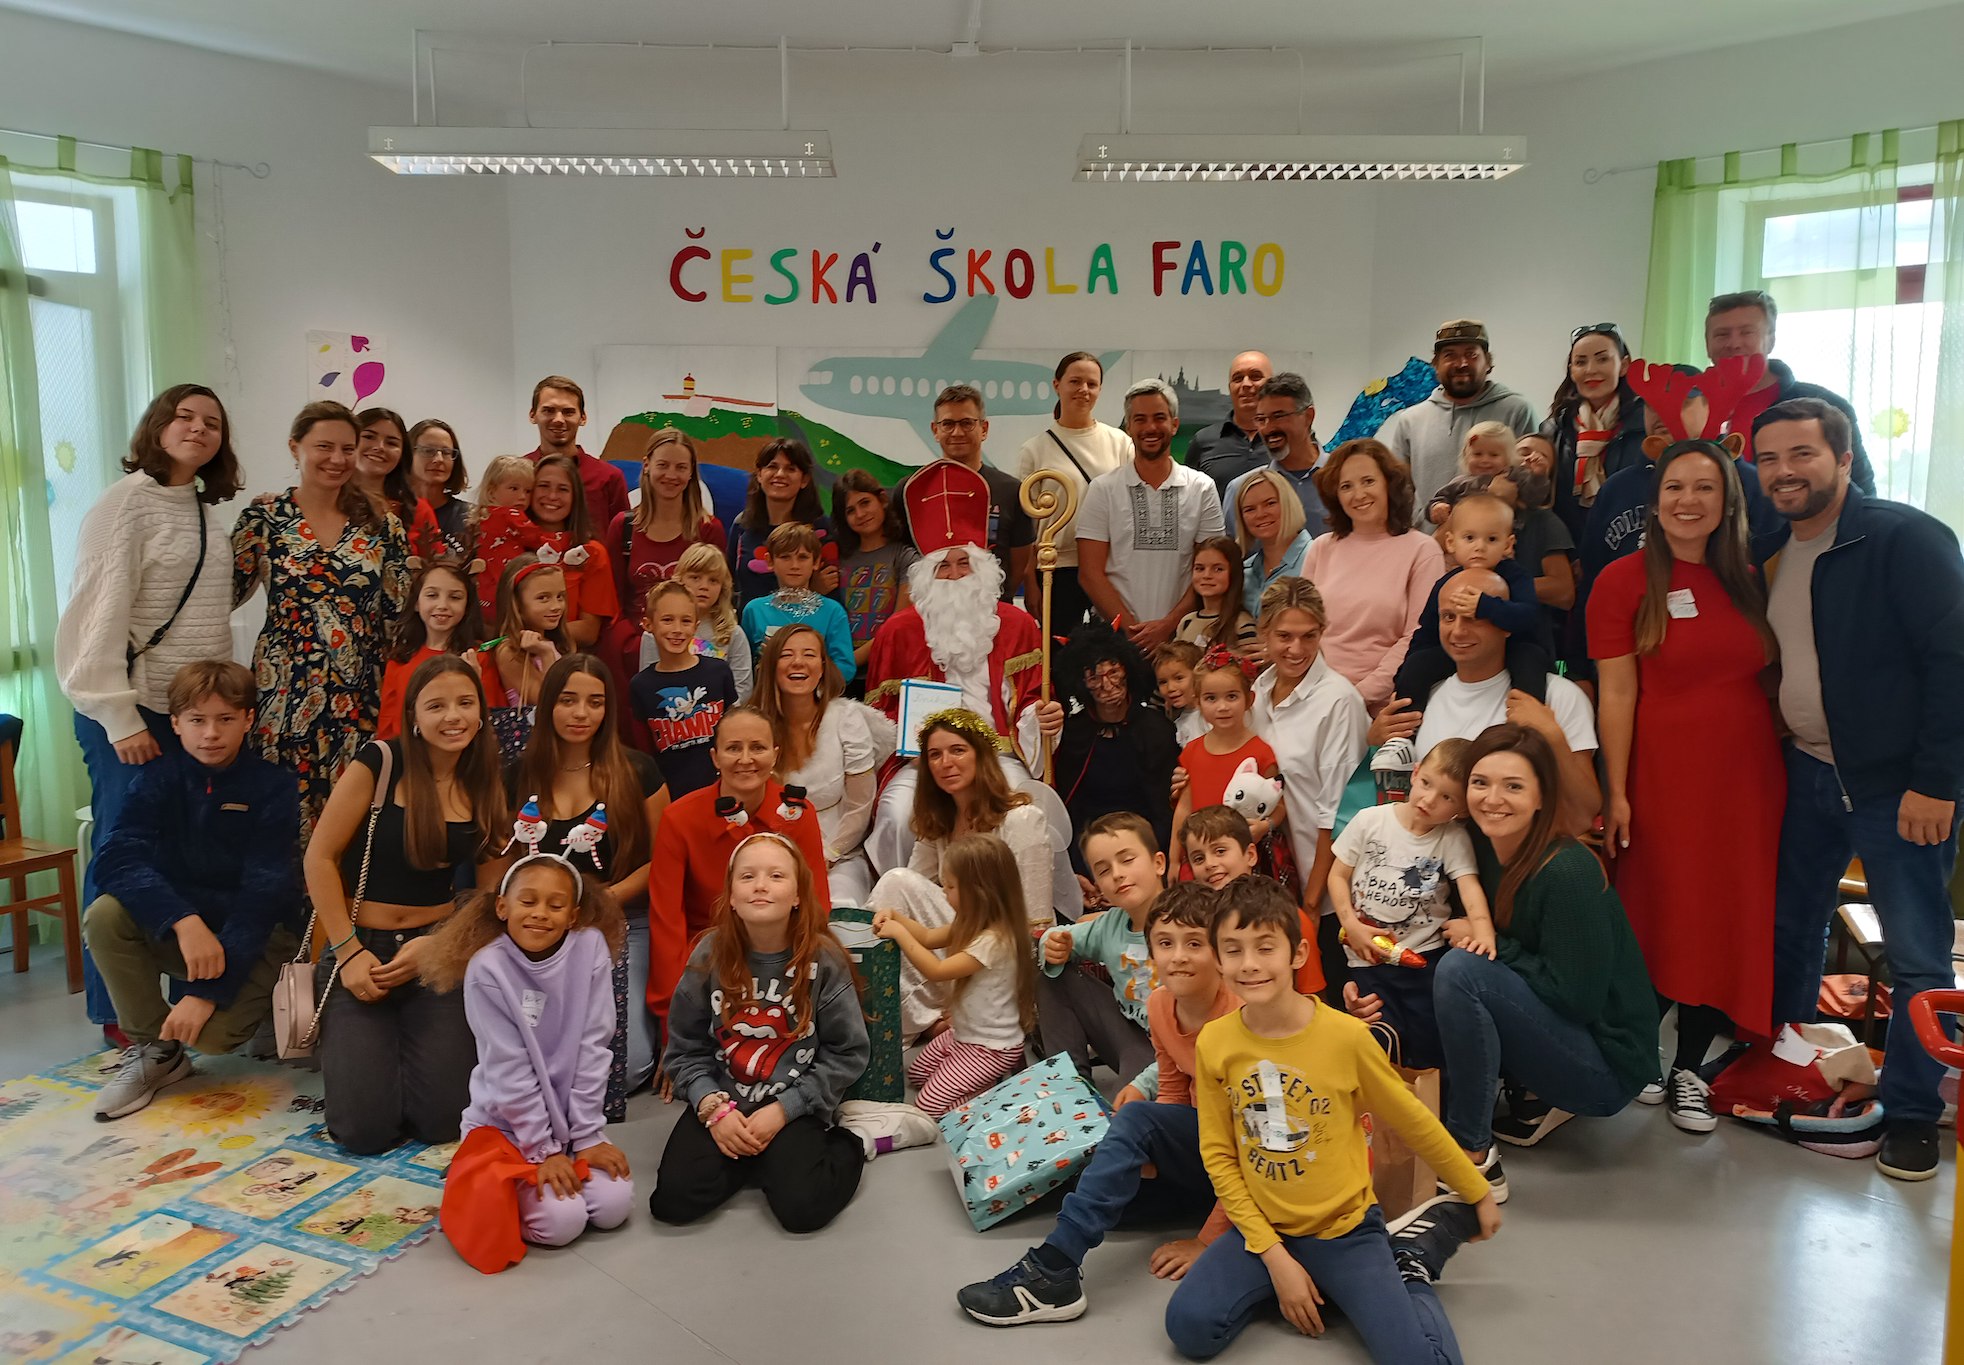 Je vidět, že do české školy ve Faru, malého ostrova českého jazyka i kultury na jihu Portugalska, se chodí s radostí. 